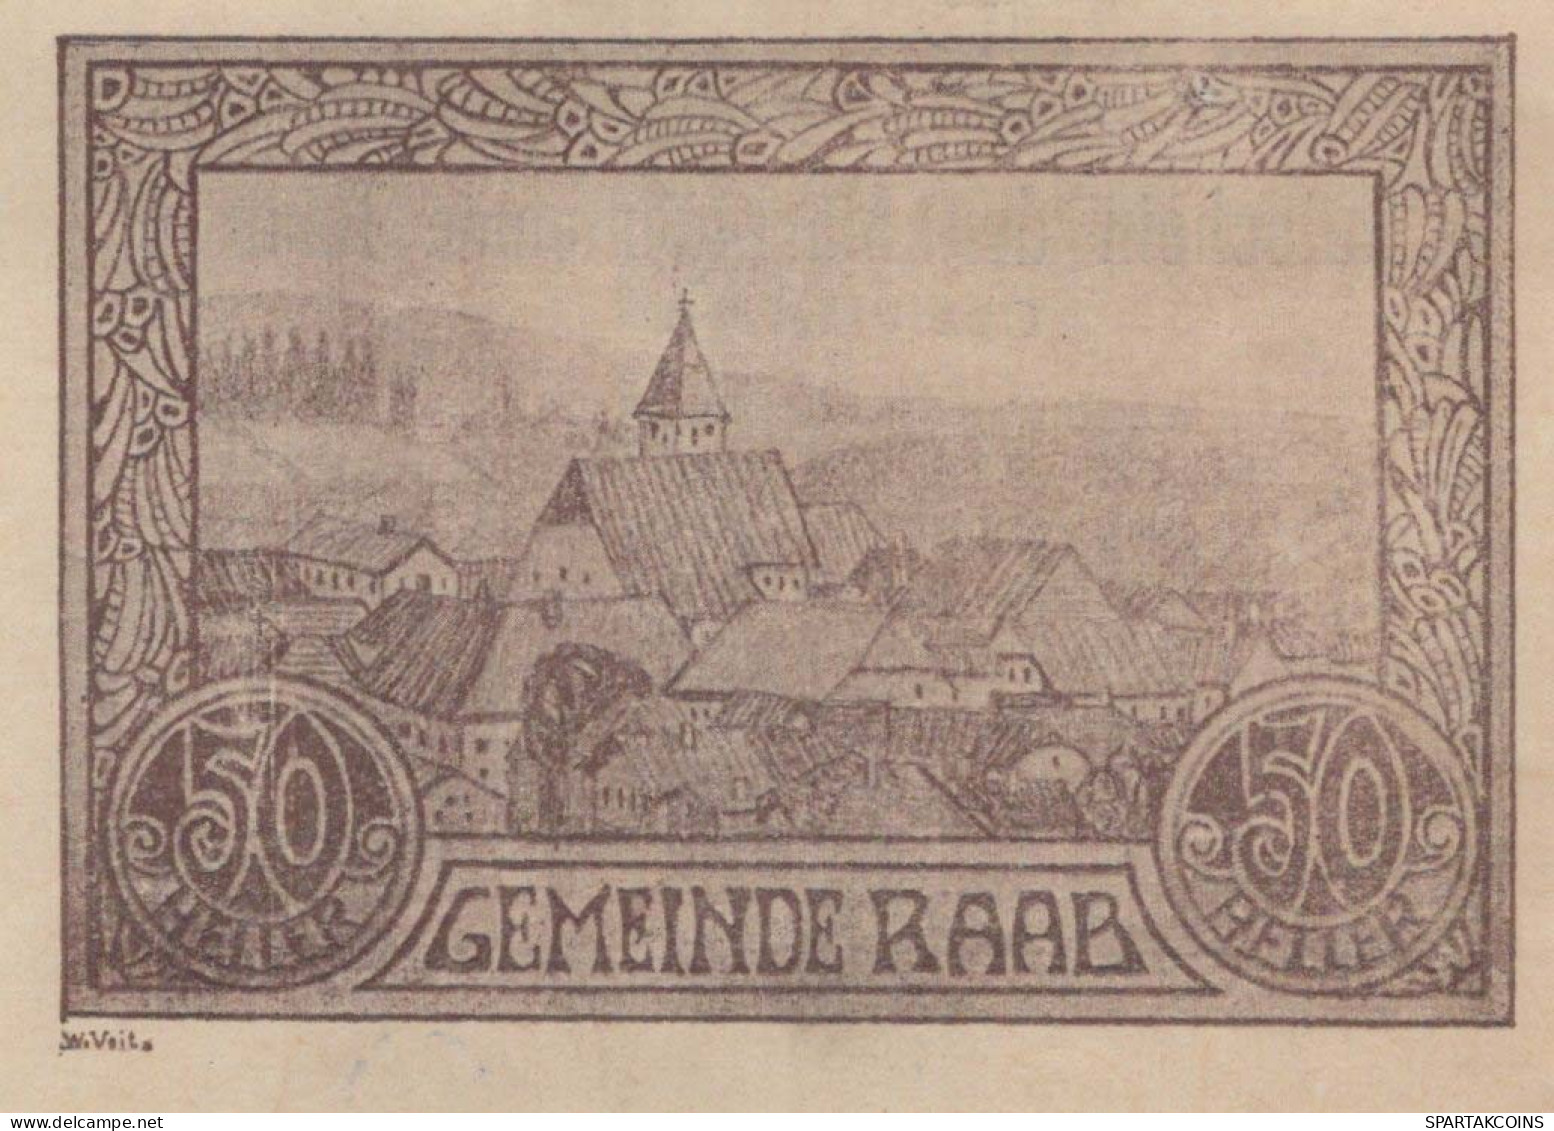 50 HELLER 1920 Stadt RAAB Oberösterreich Österreich Notgeld Banknote #PD962 - [11] Local Banknote Issues